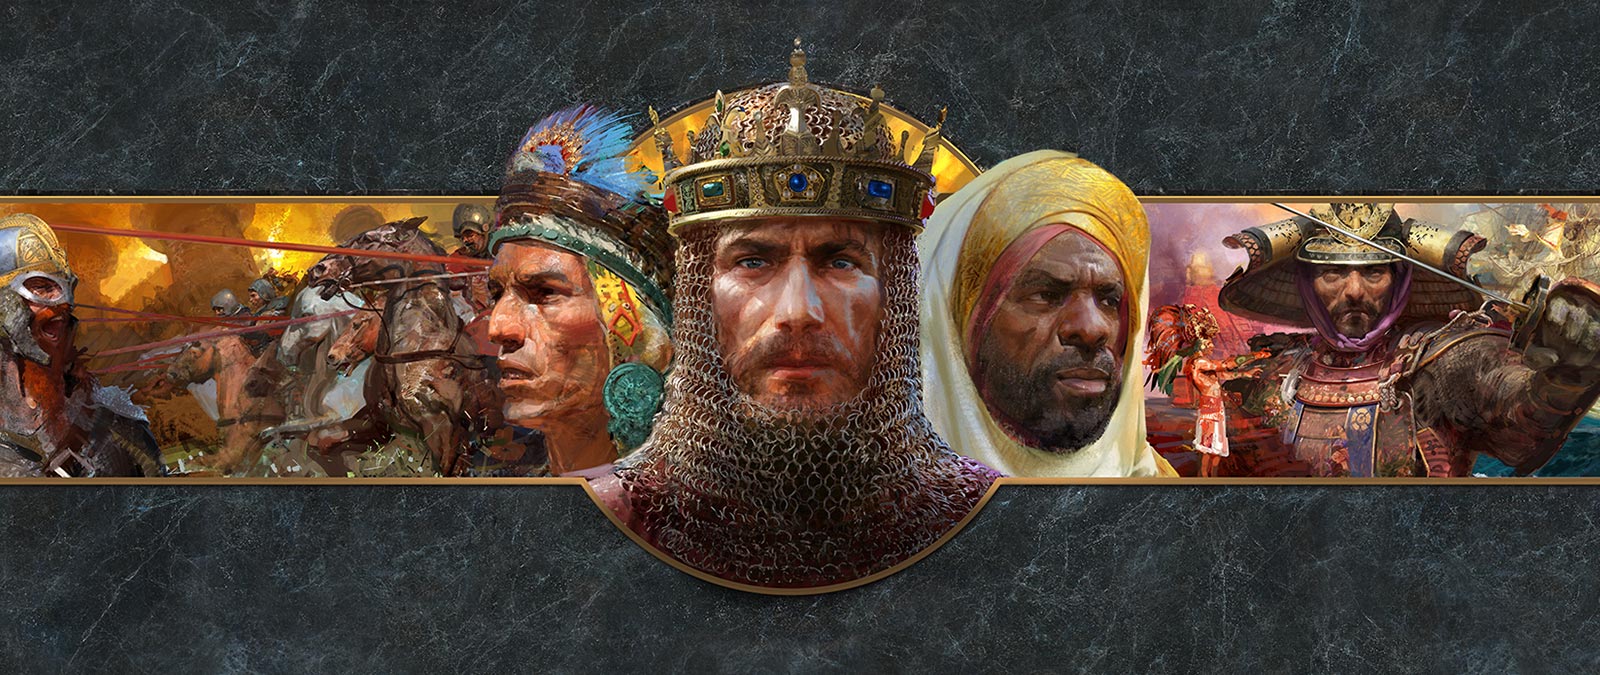 Huvudbilder av ledare från olika civilisationer visas framför stridsscener.